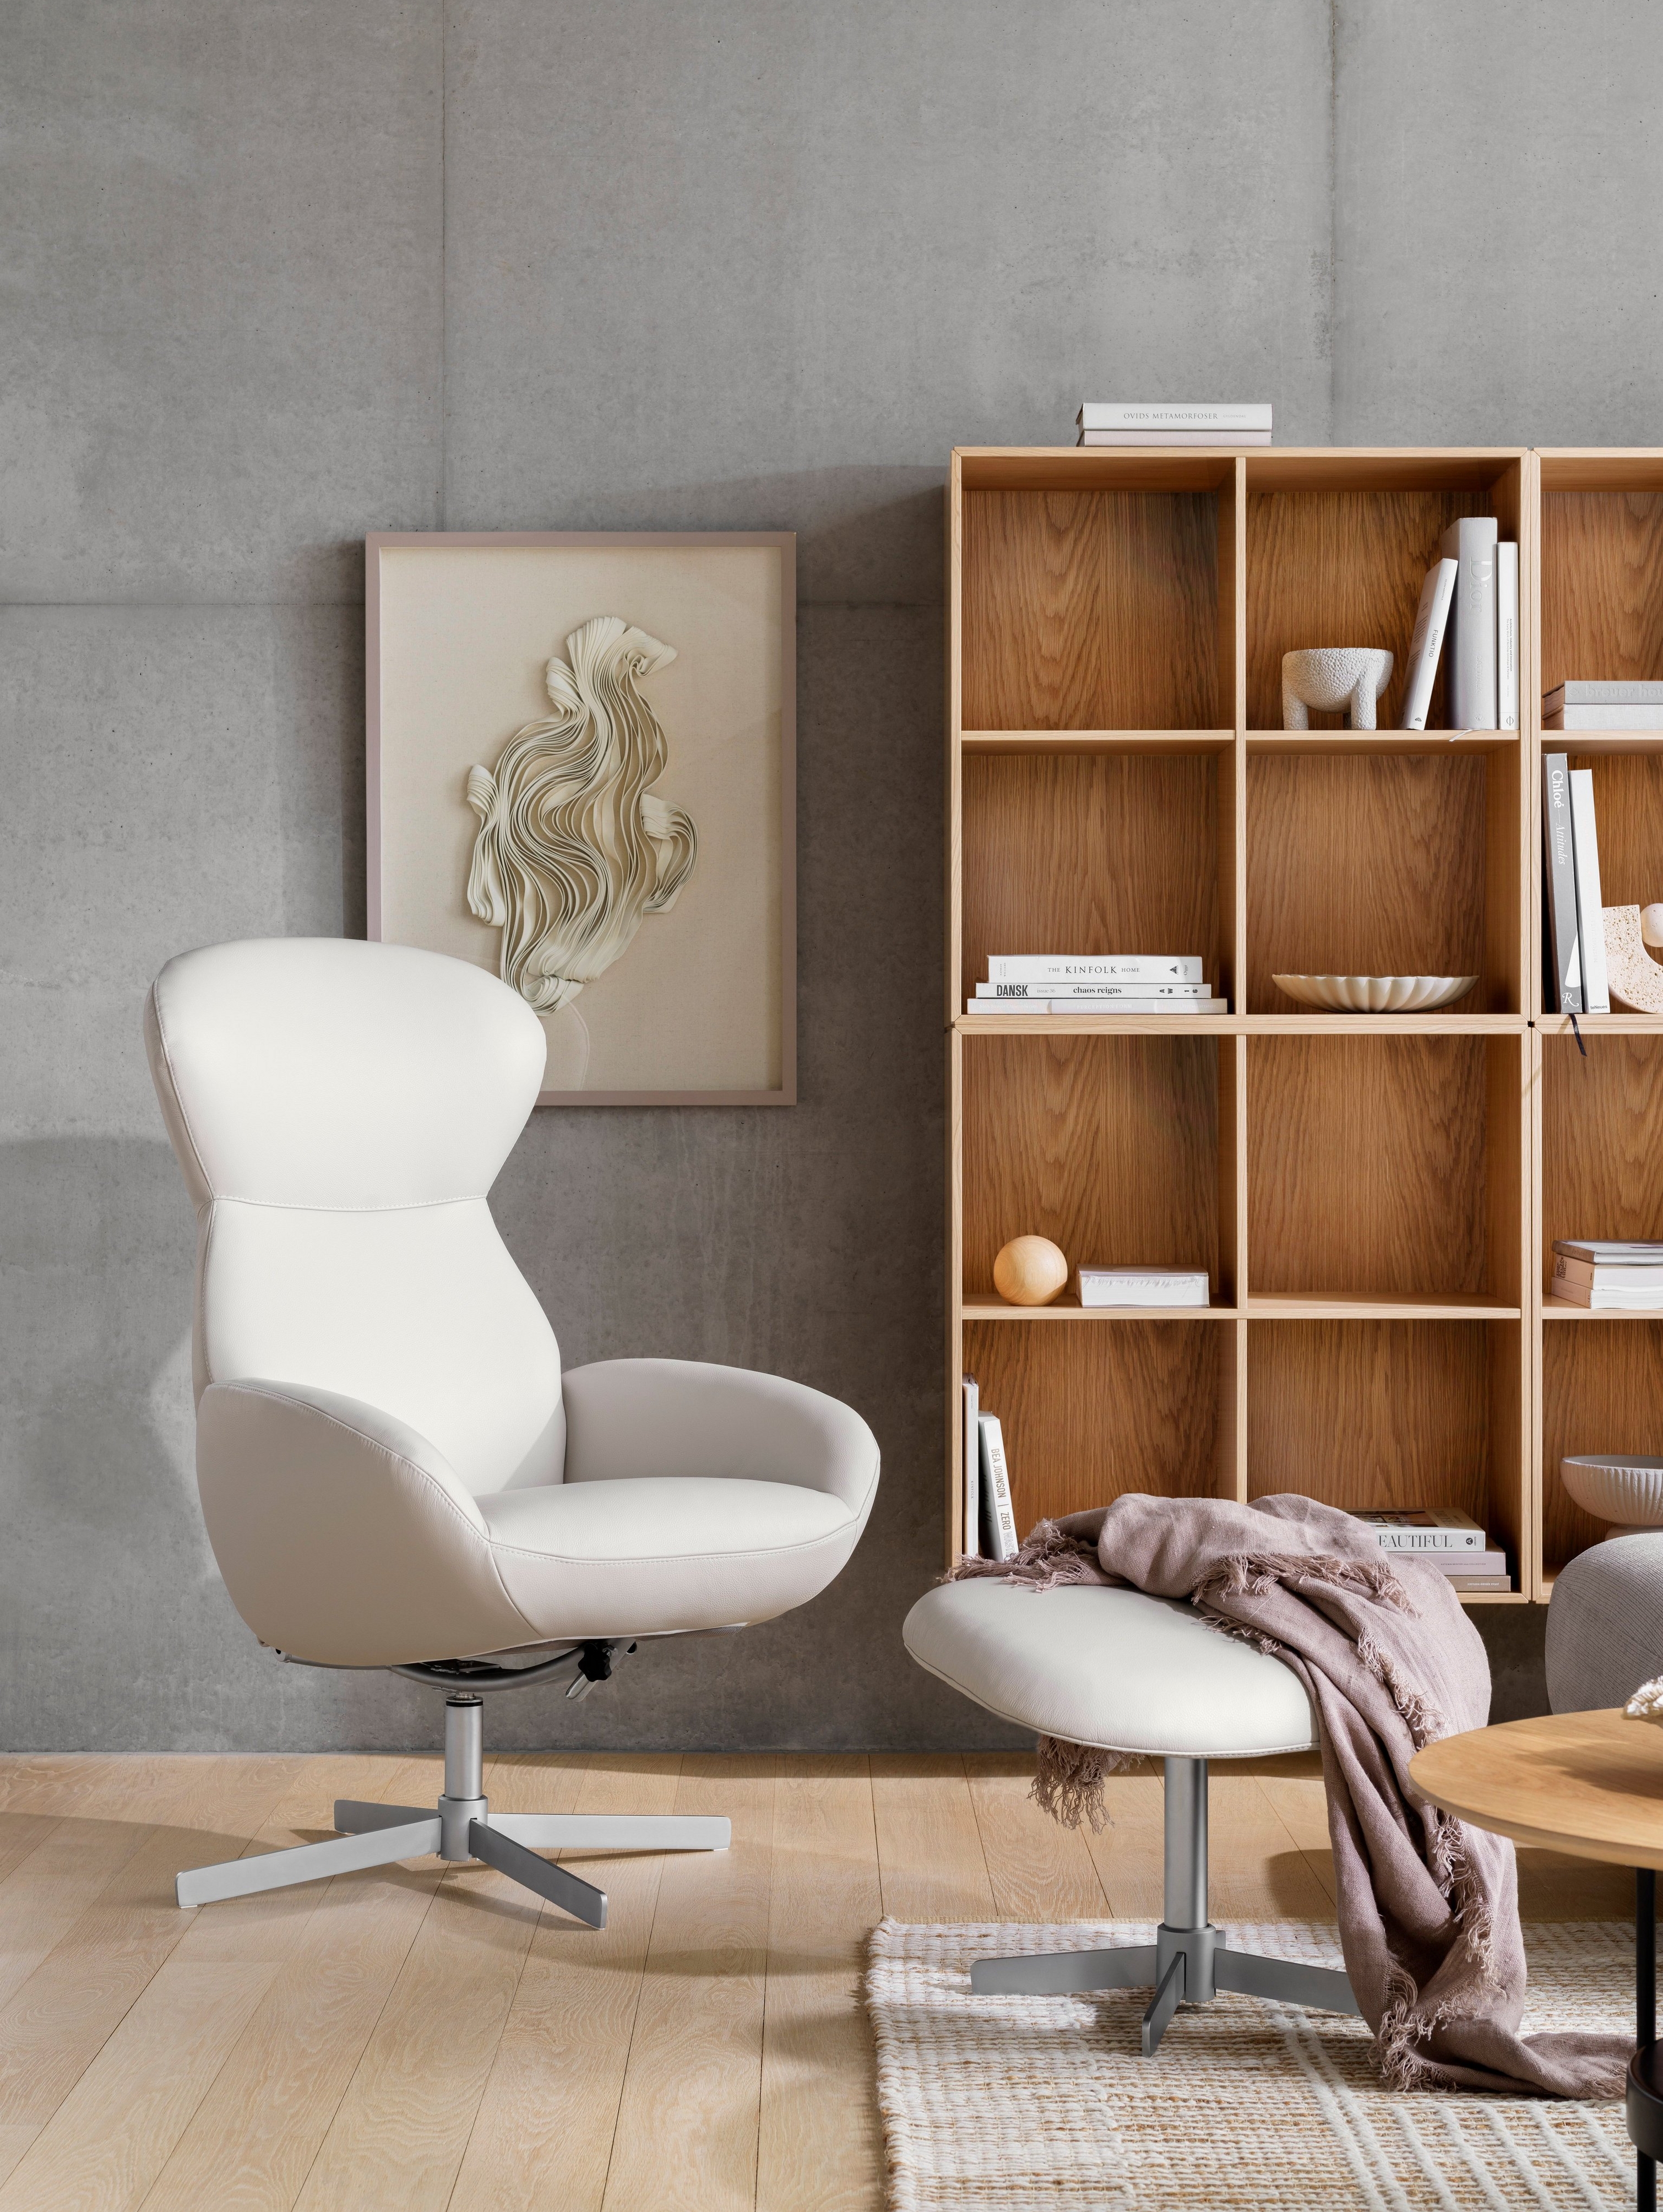 Butaca reclinable Athena blanca con reposapiés y librería Como de madera en un espacio acogedor.